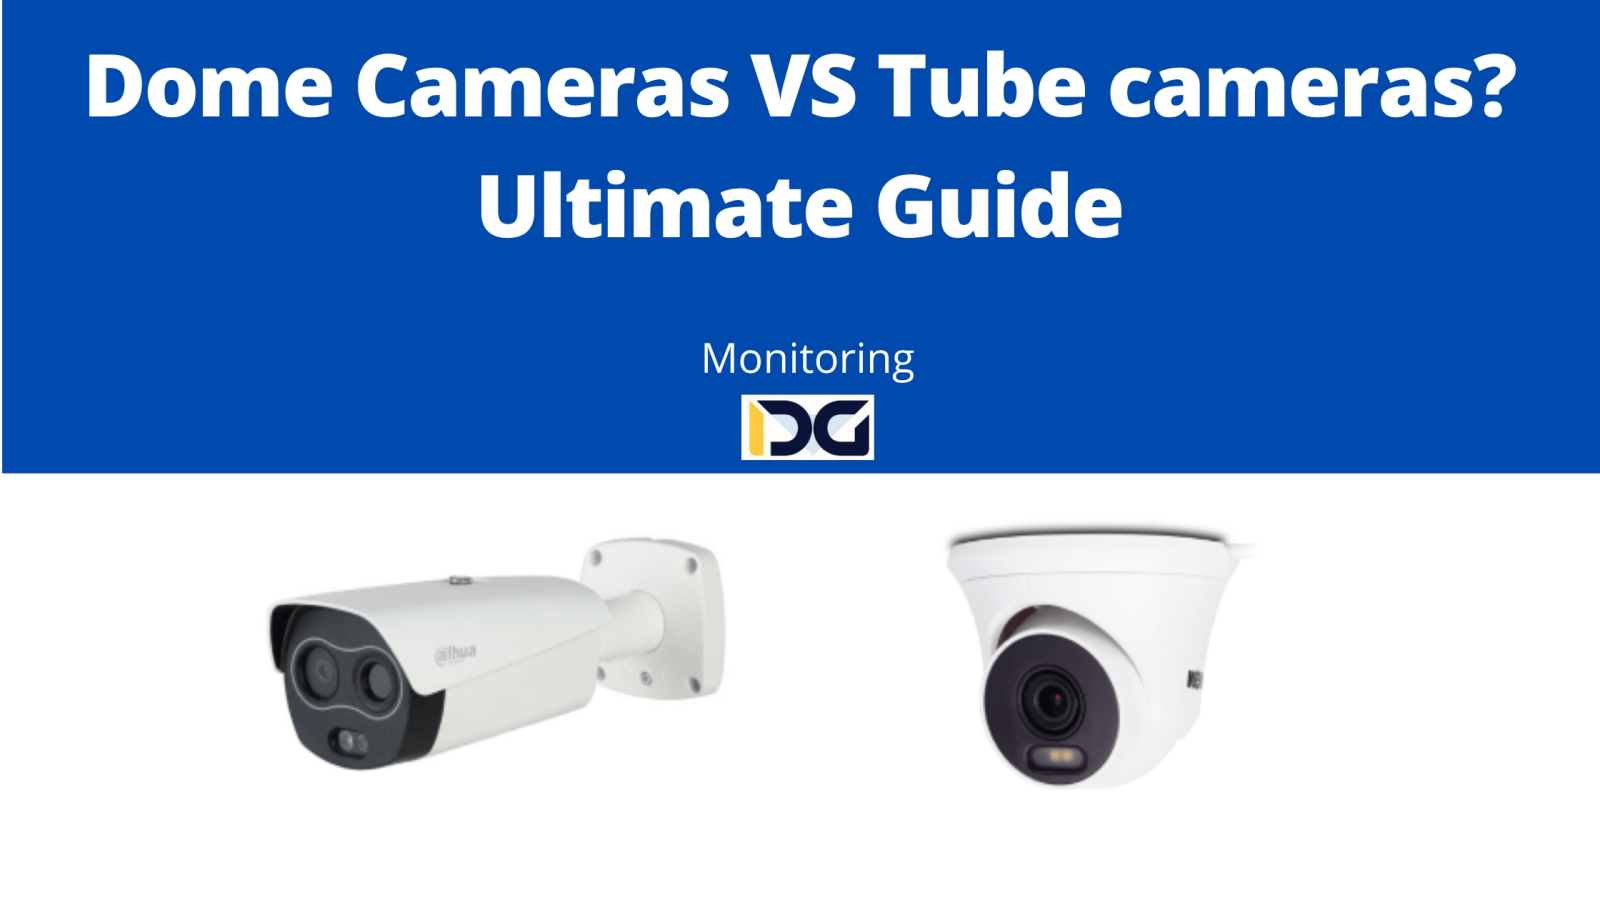 Dome Cameras VS Tube cameras? Ultimate Guide